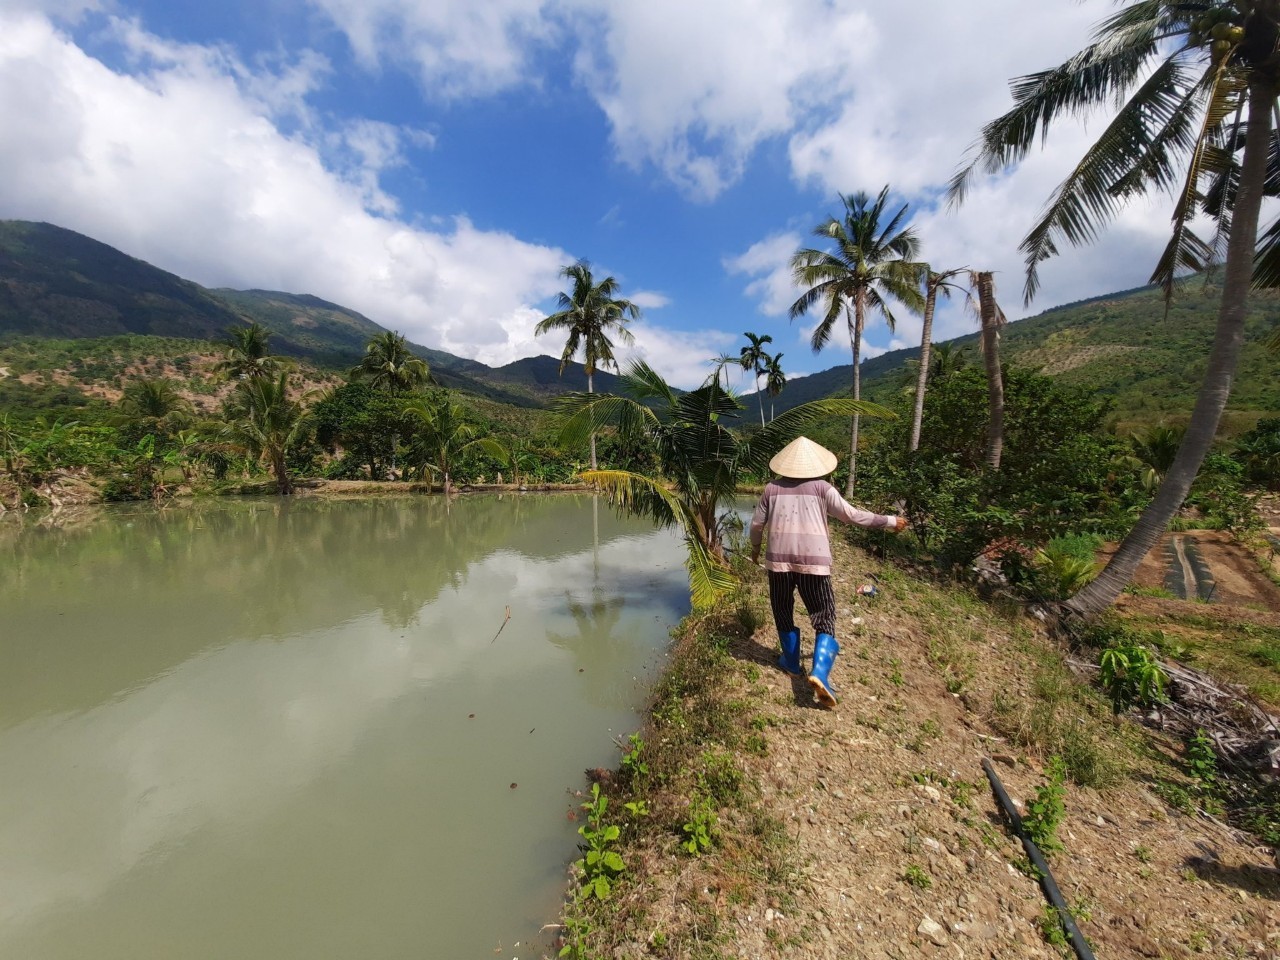 Đất rẫy Cảnh thôn quê Đắc Lộc Nha Trang - gần 5ha đất Có suối chảy